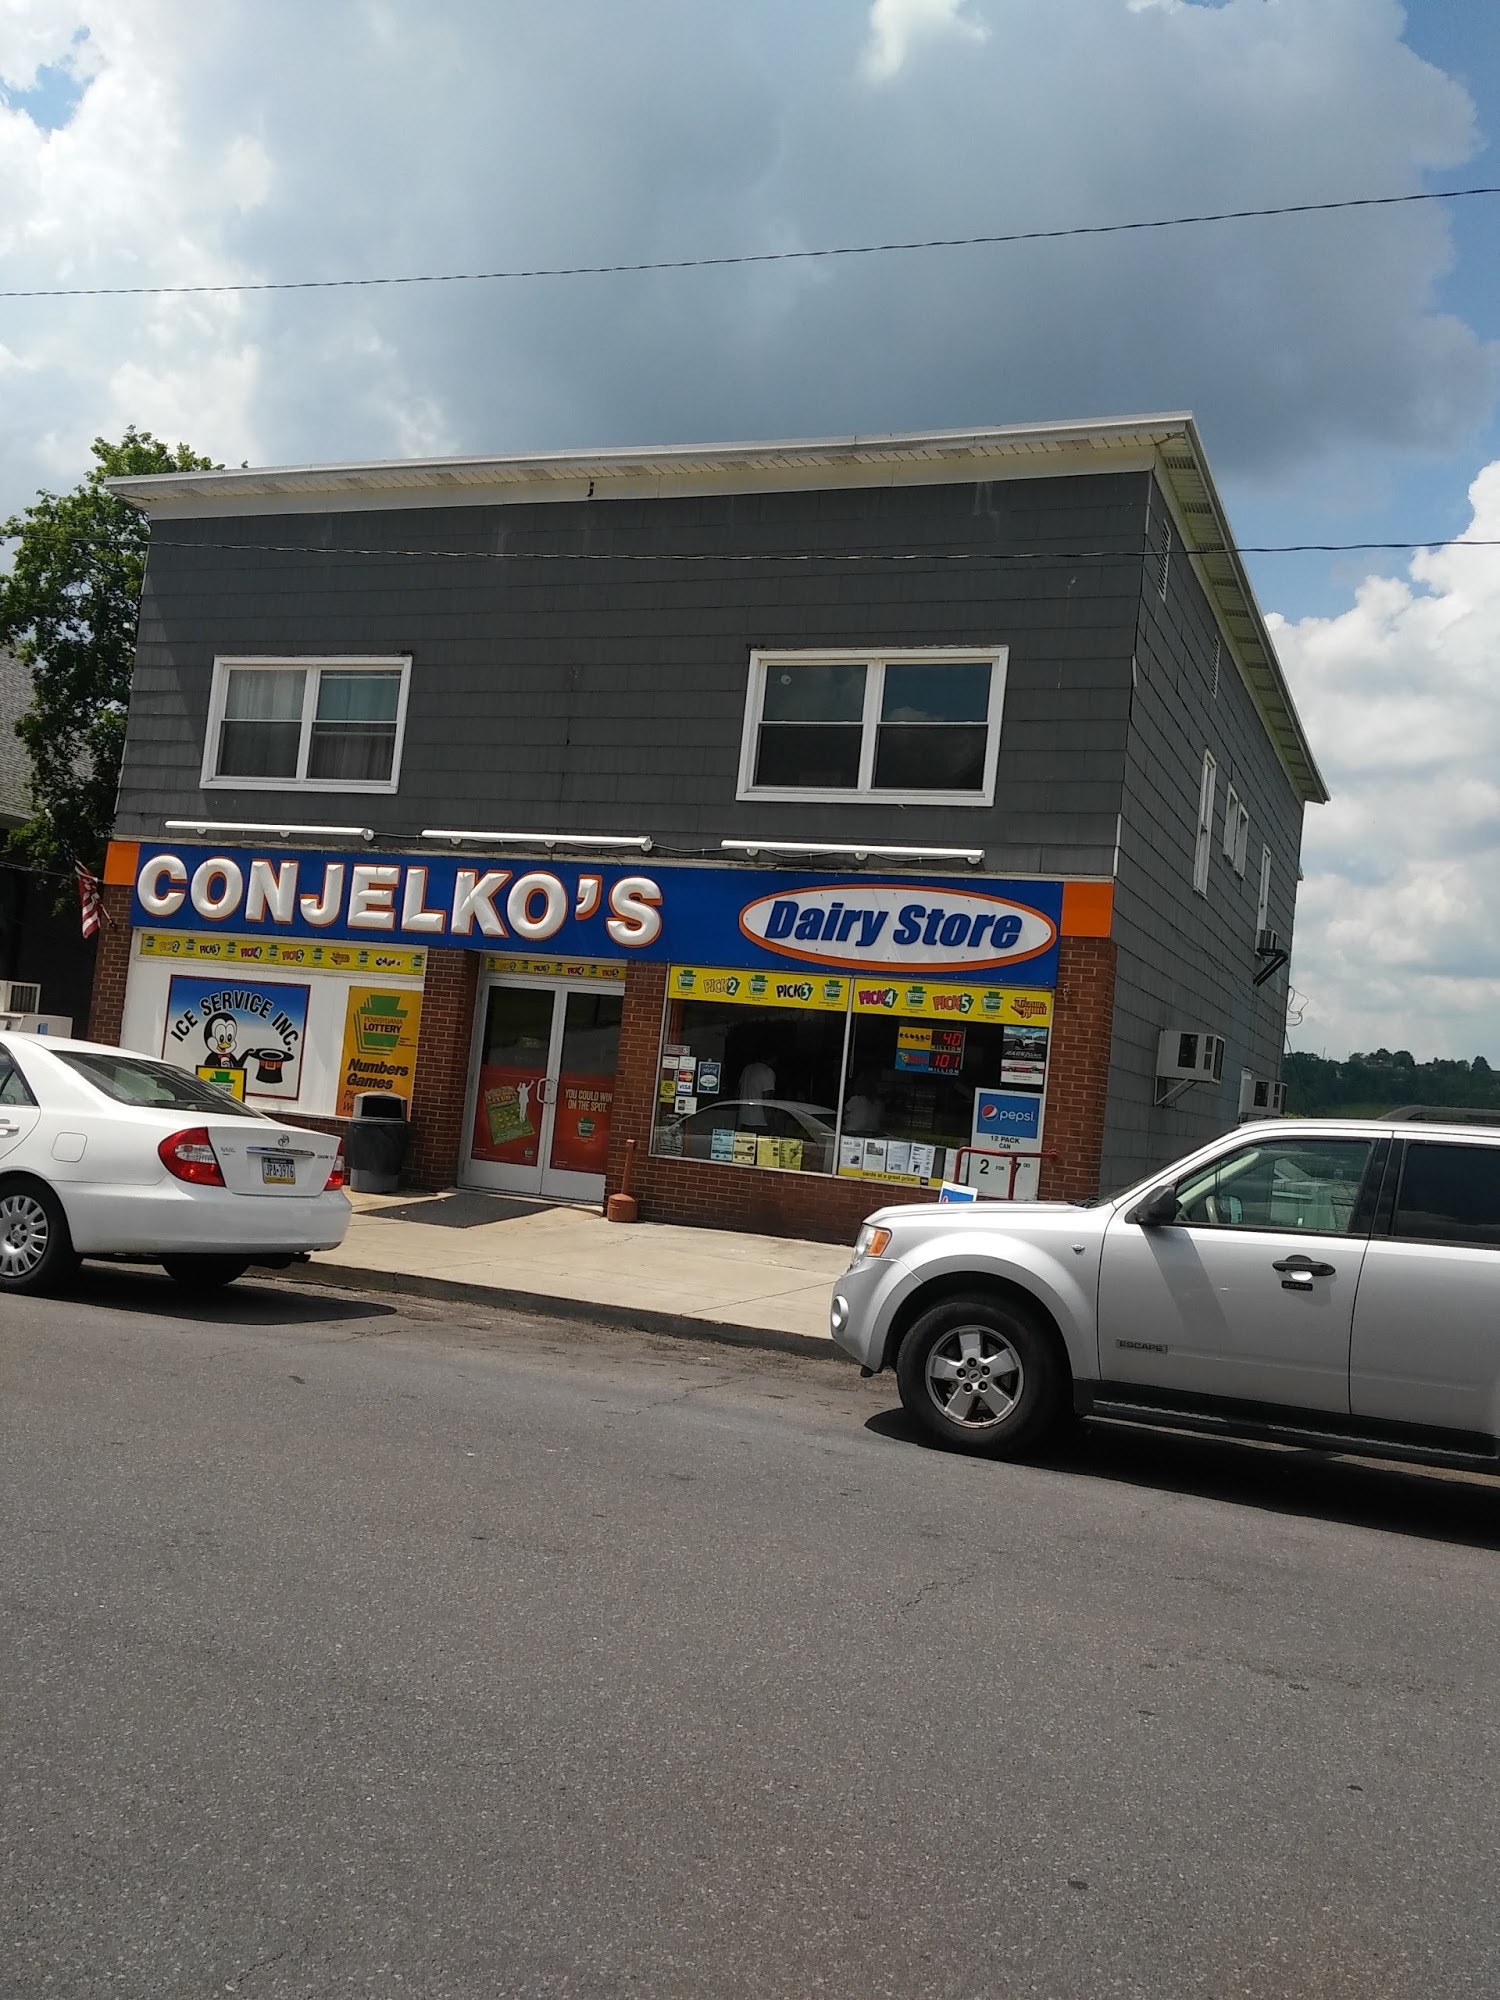 Conjelko's Dairy Store